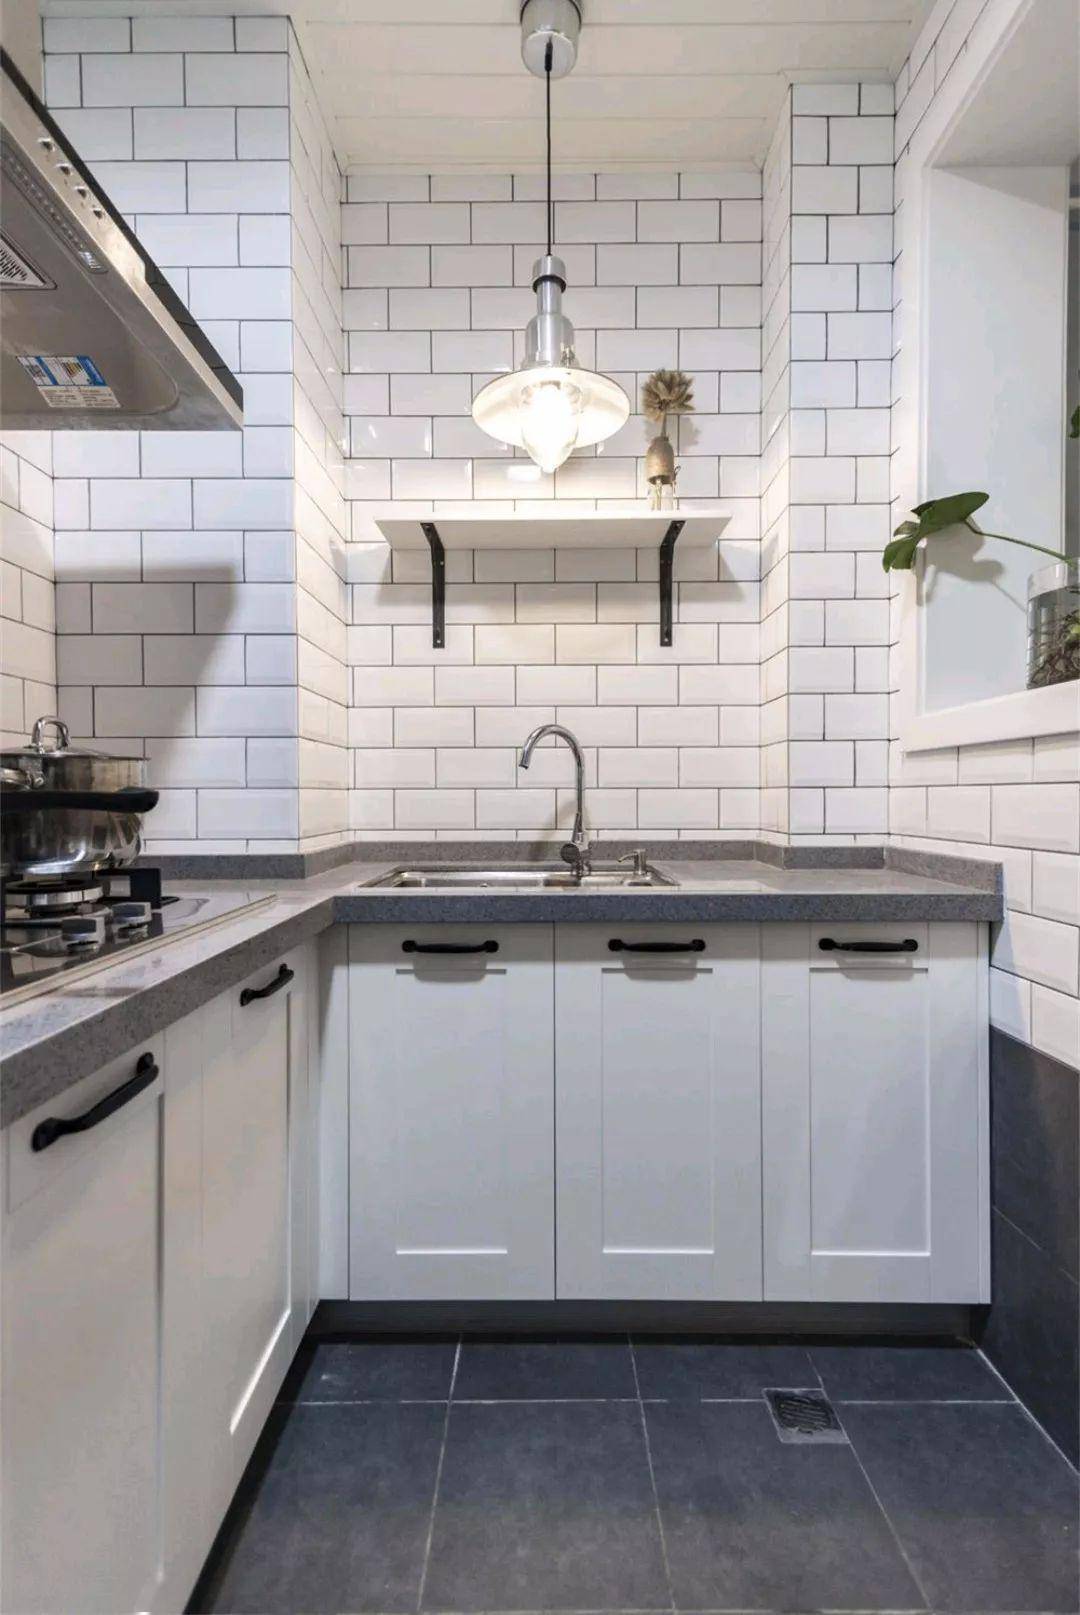 厨房处选择了最近最为流行的长方形小白砖设计,搭配浅灰色的地砖,打造